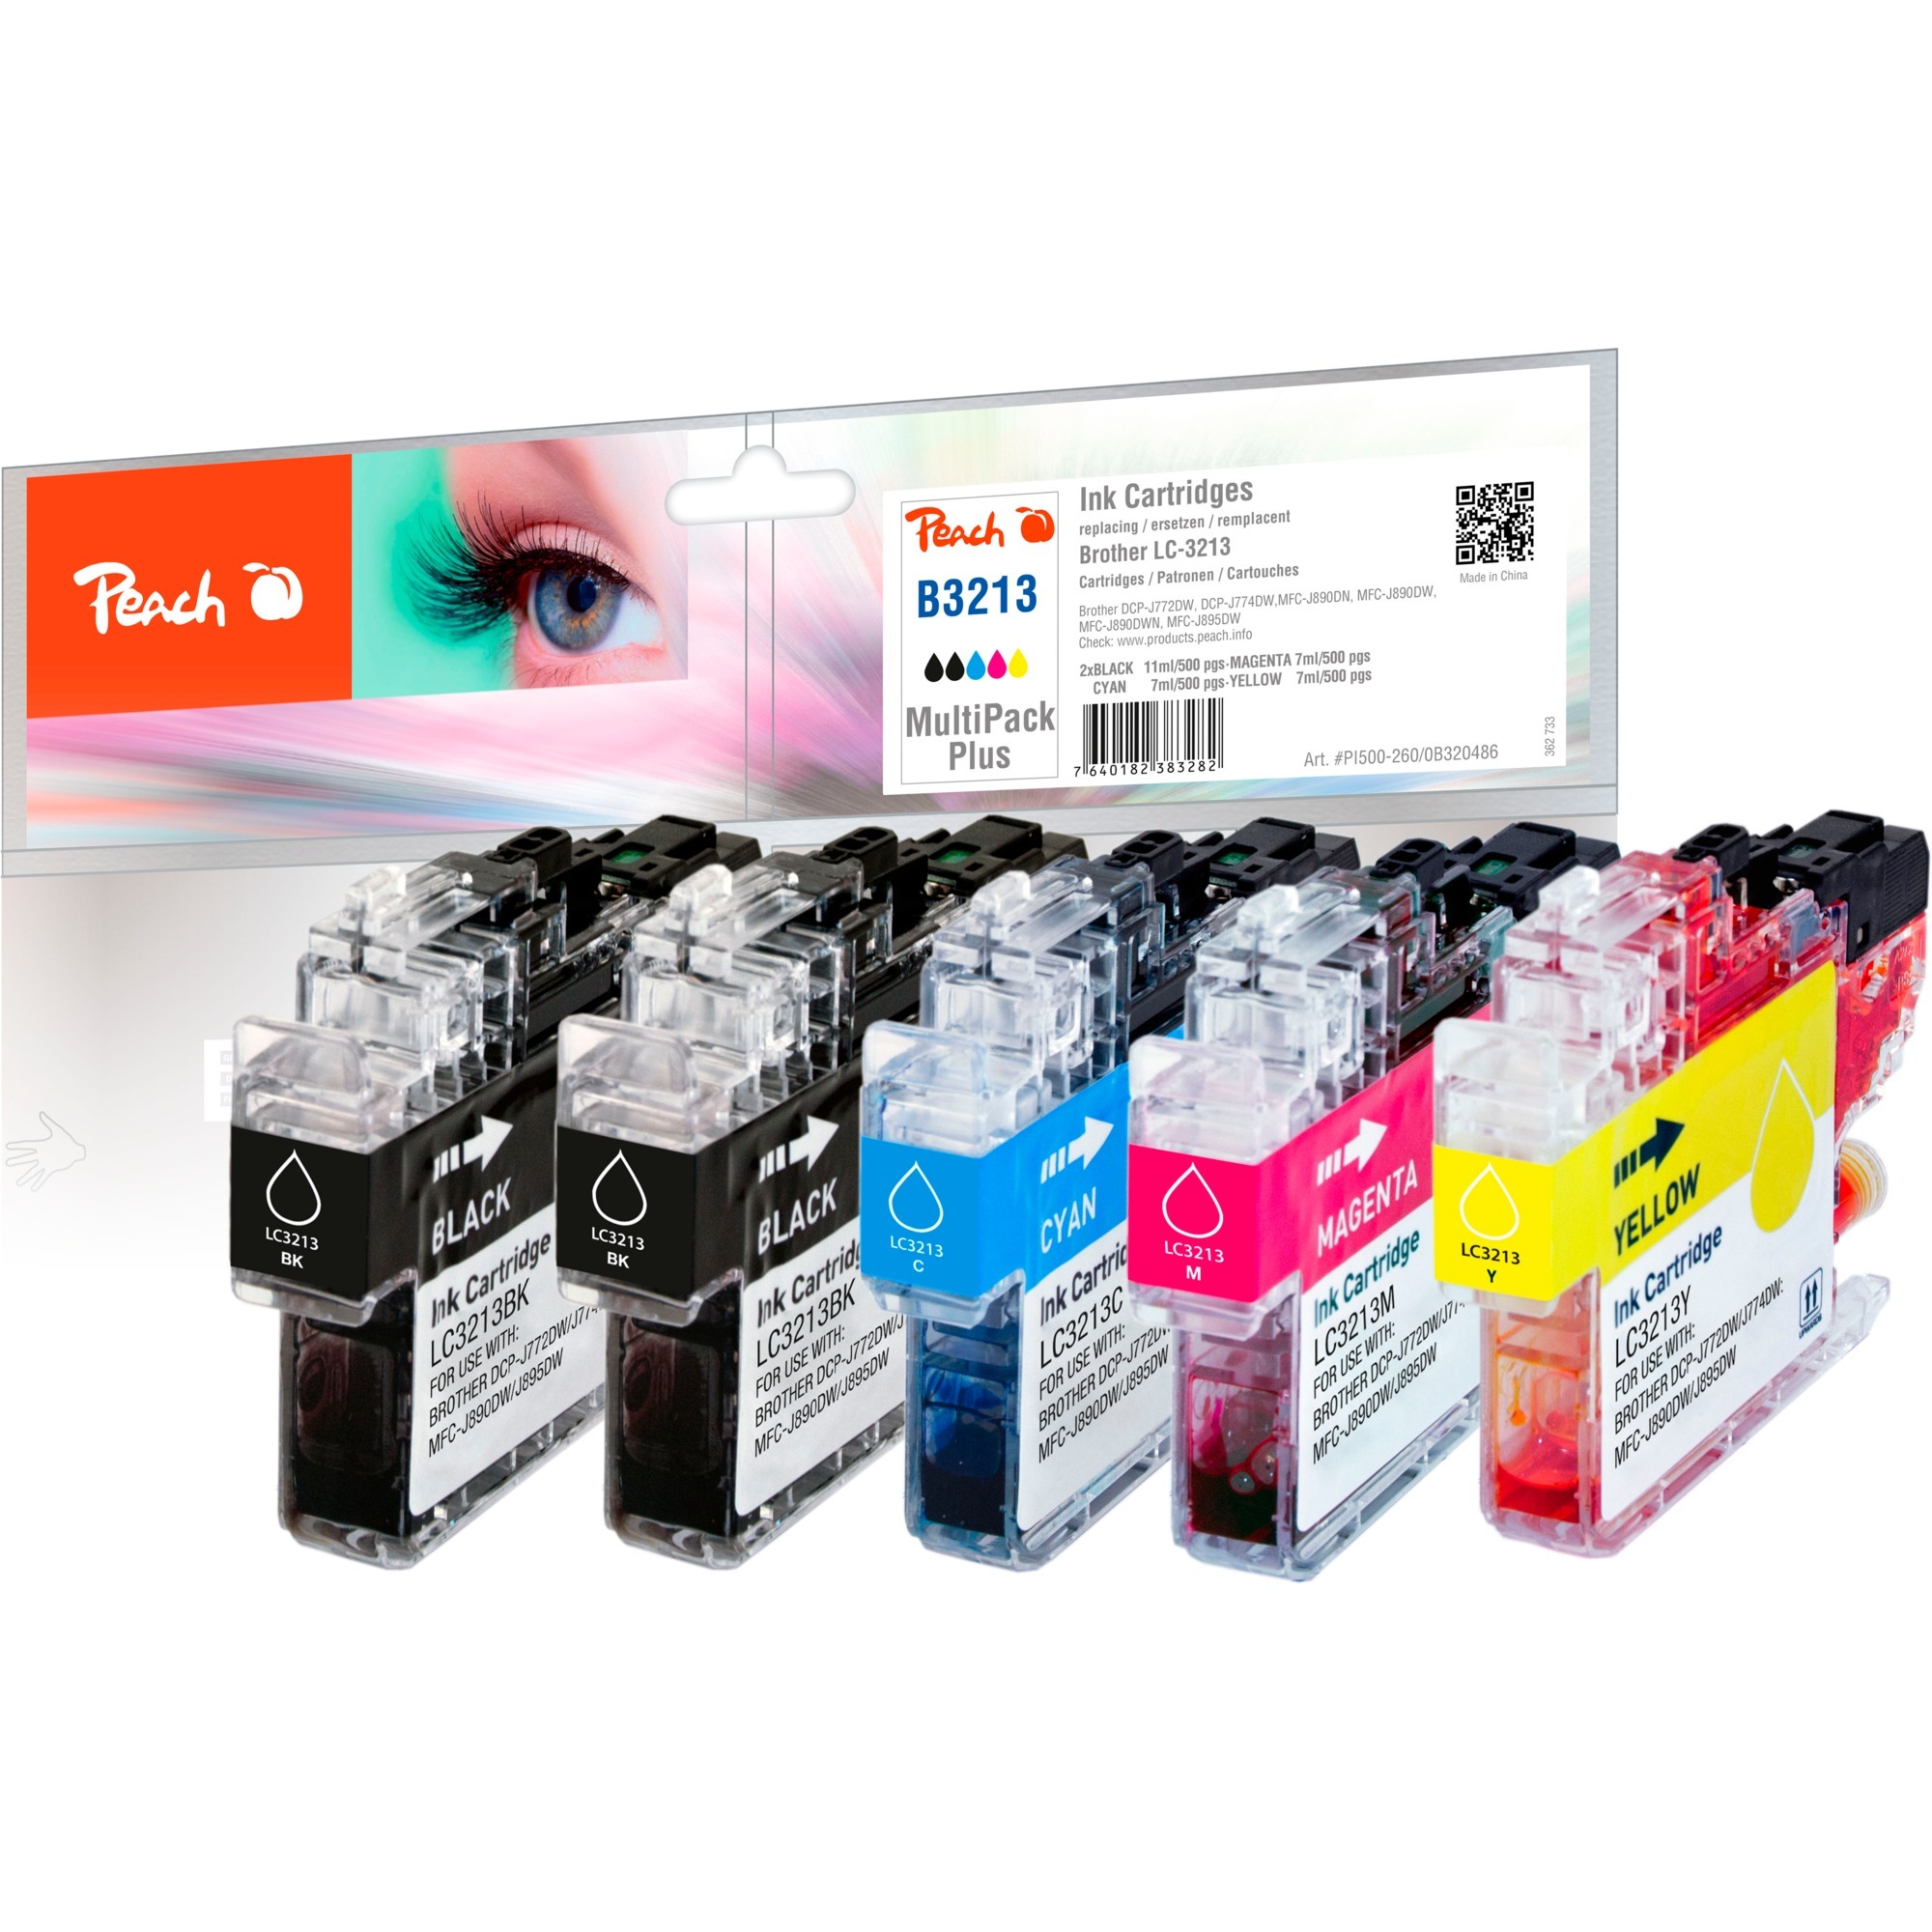 Image of Alternate - Tinte Spar Pack Plus PI500-260 online einkaufen bei Alternate